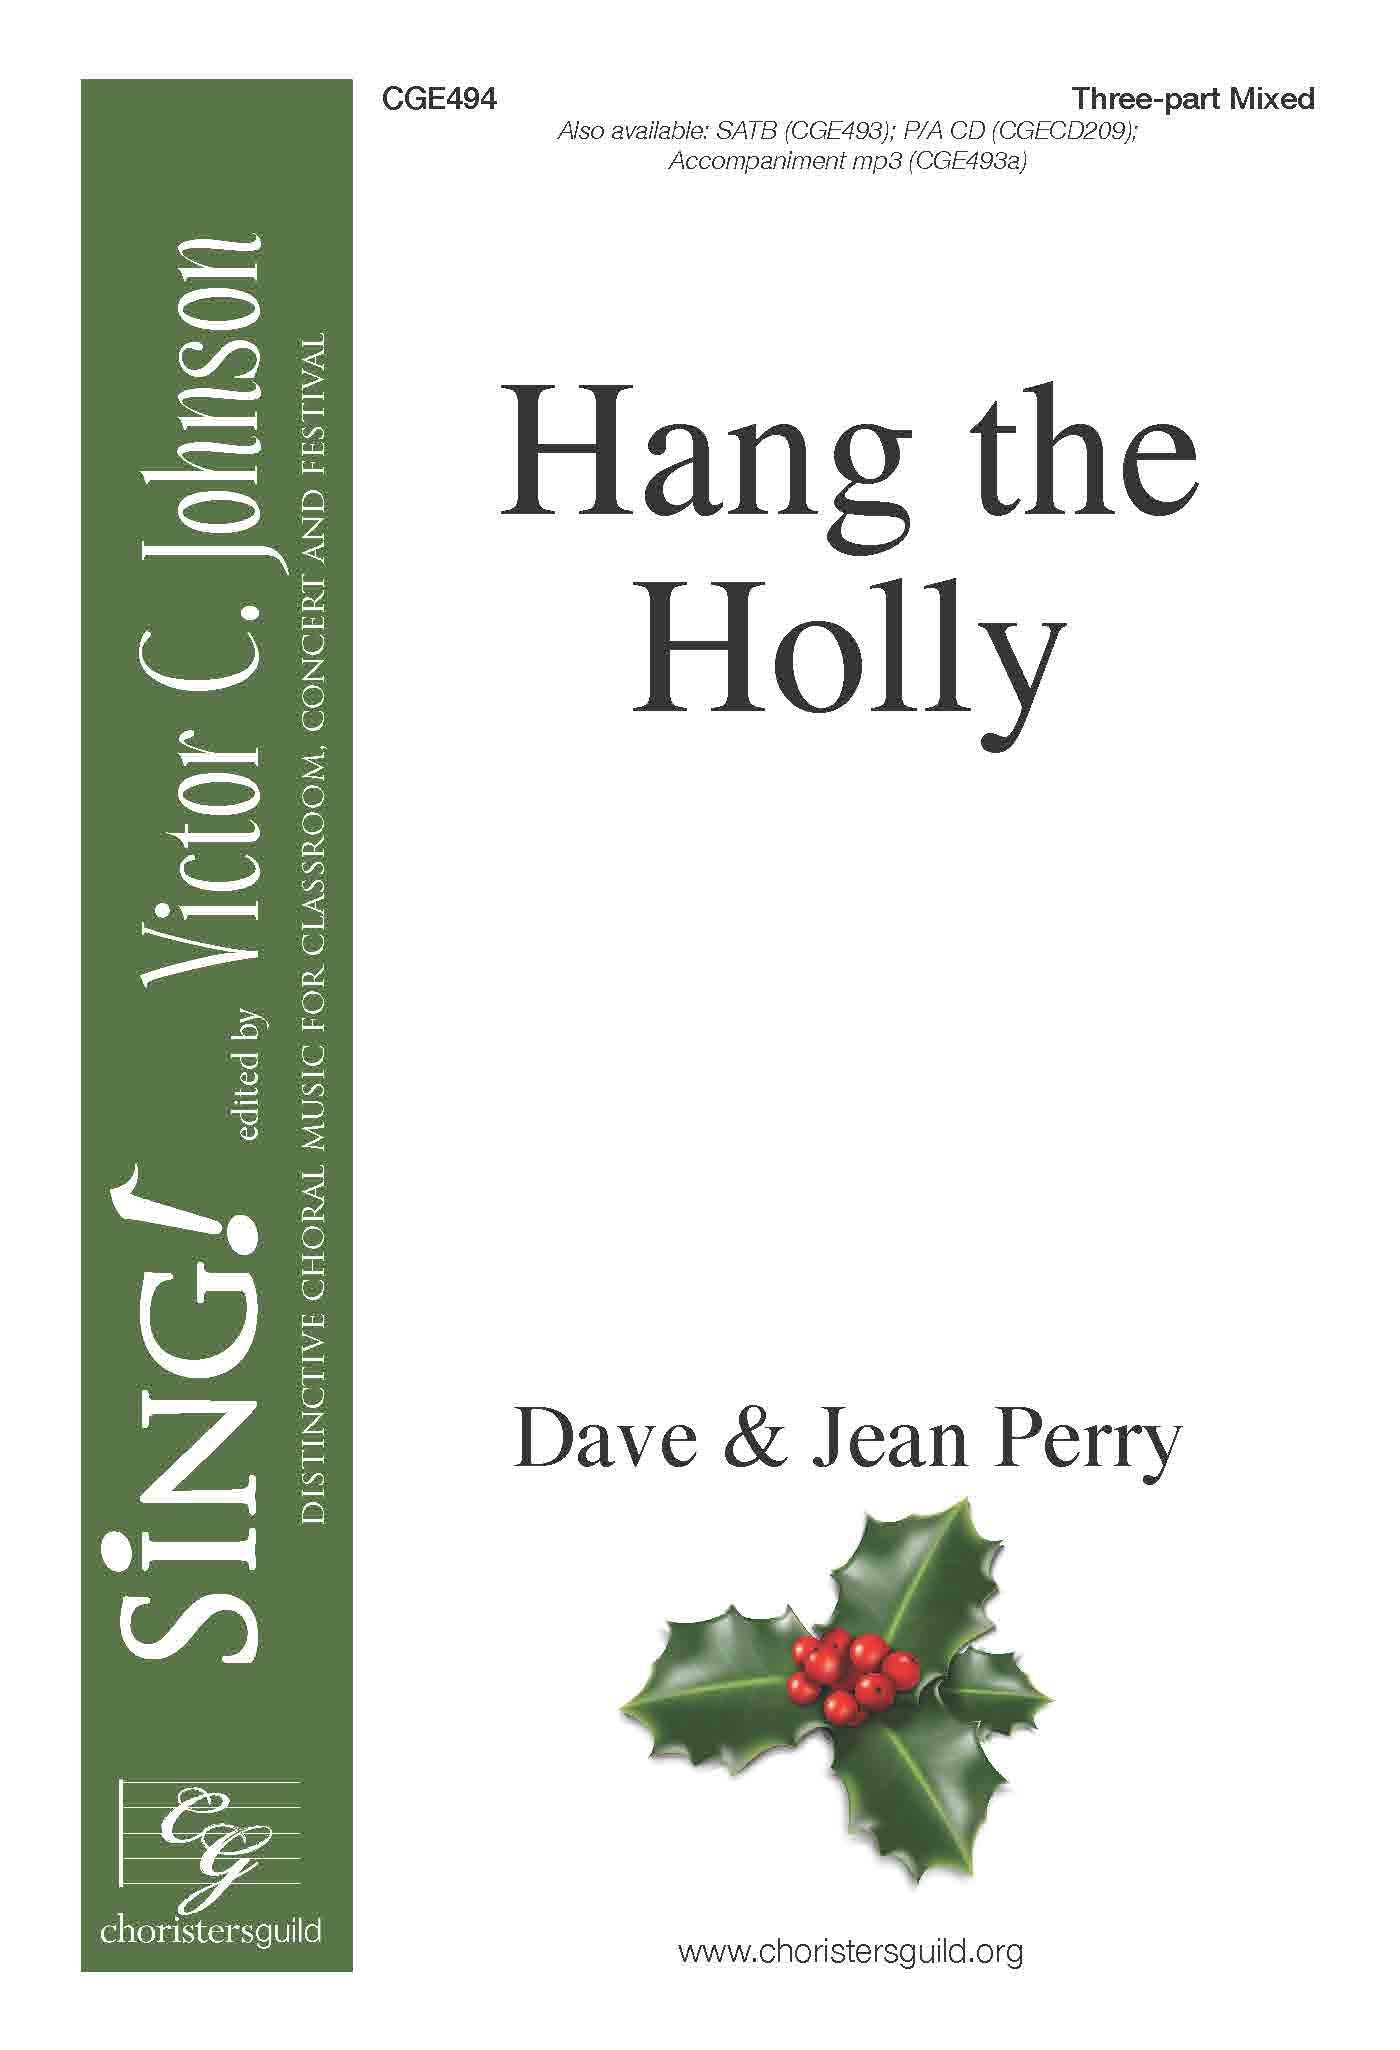 Hang the Holly - Three-part Mixed